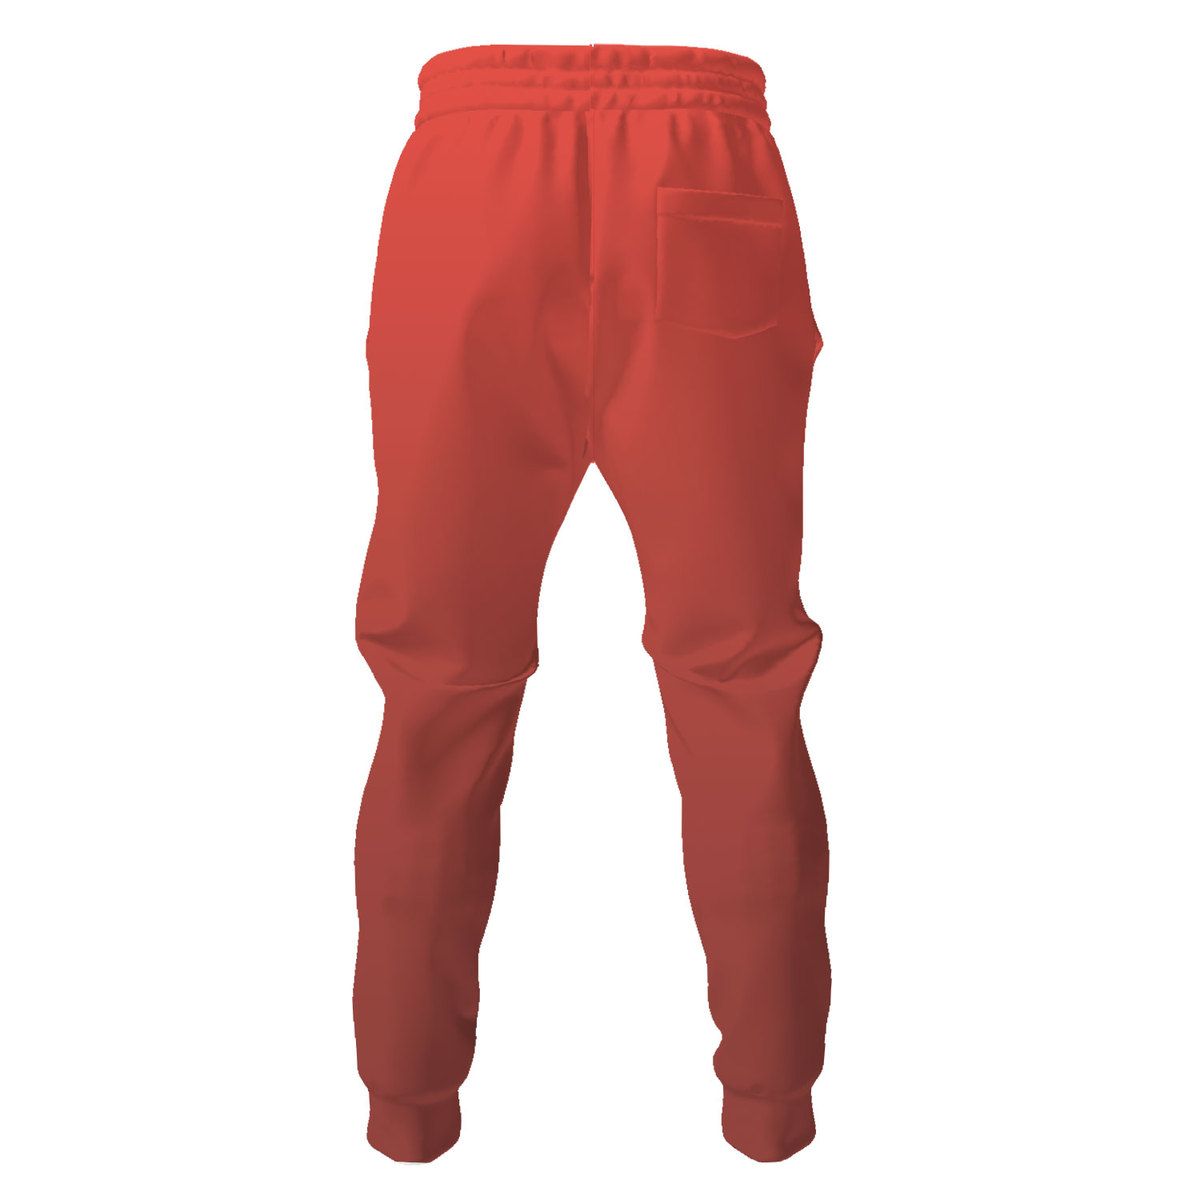 Pyro TF2 pants